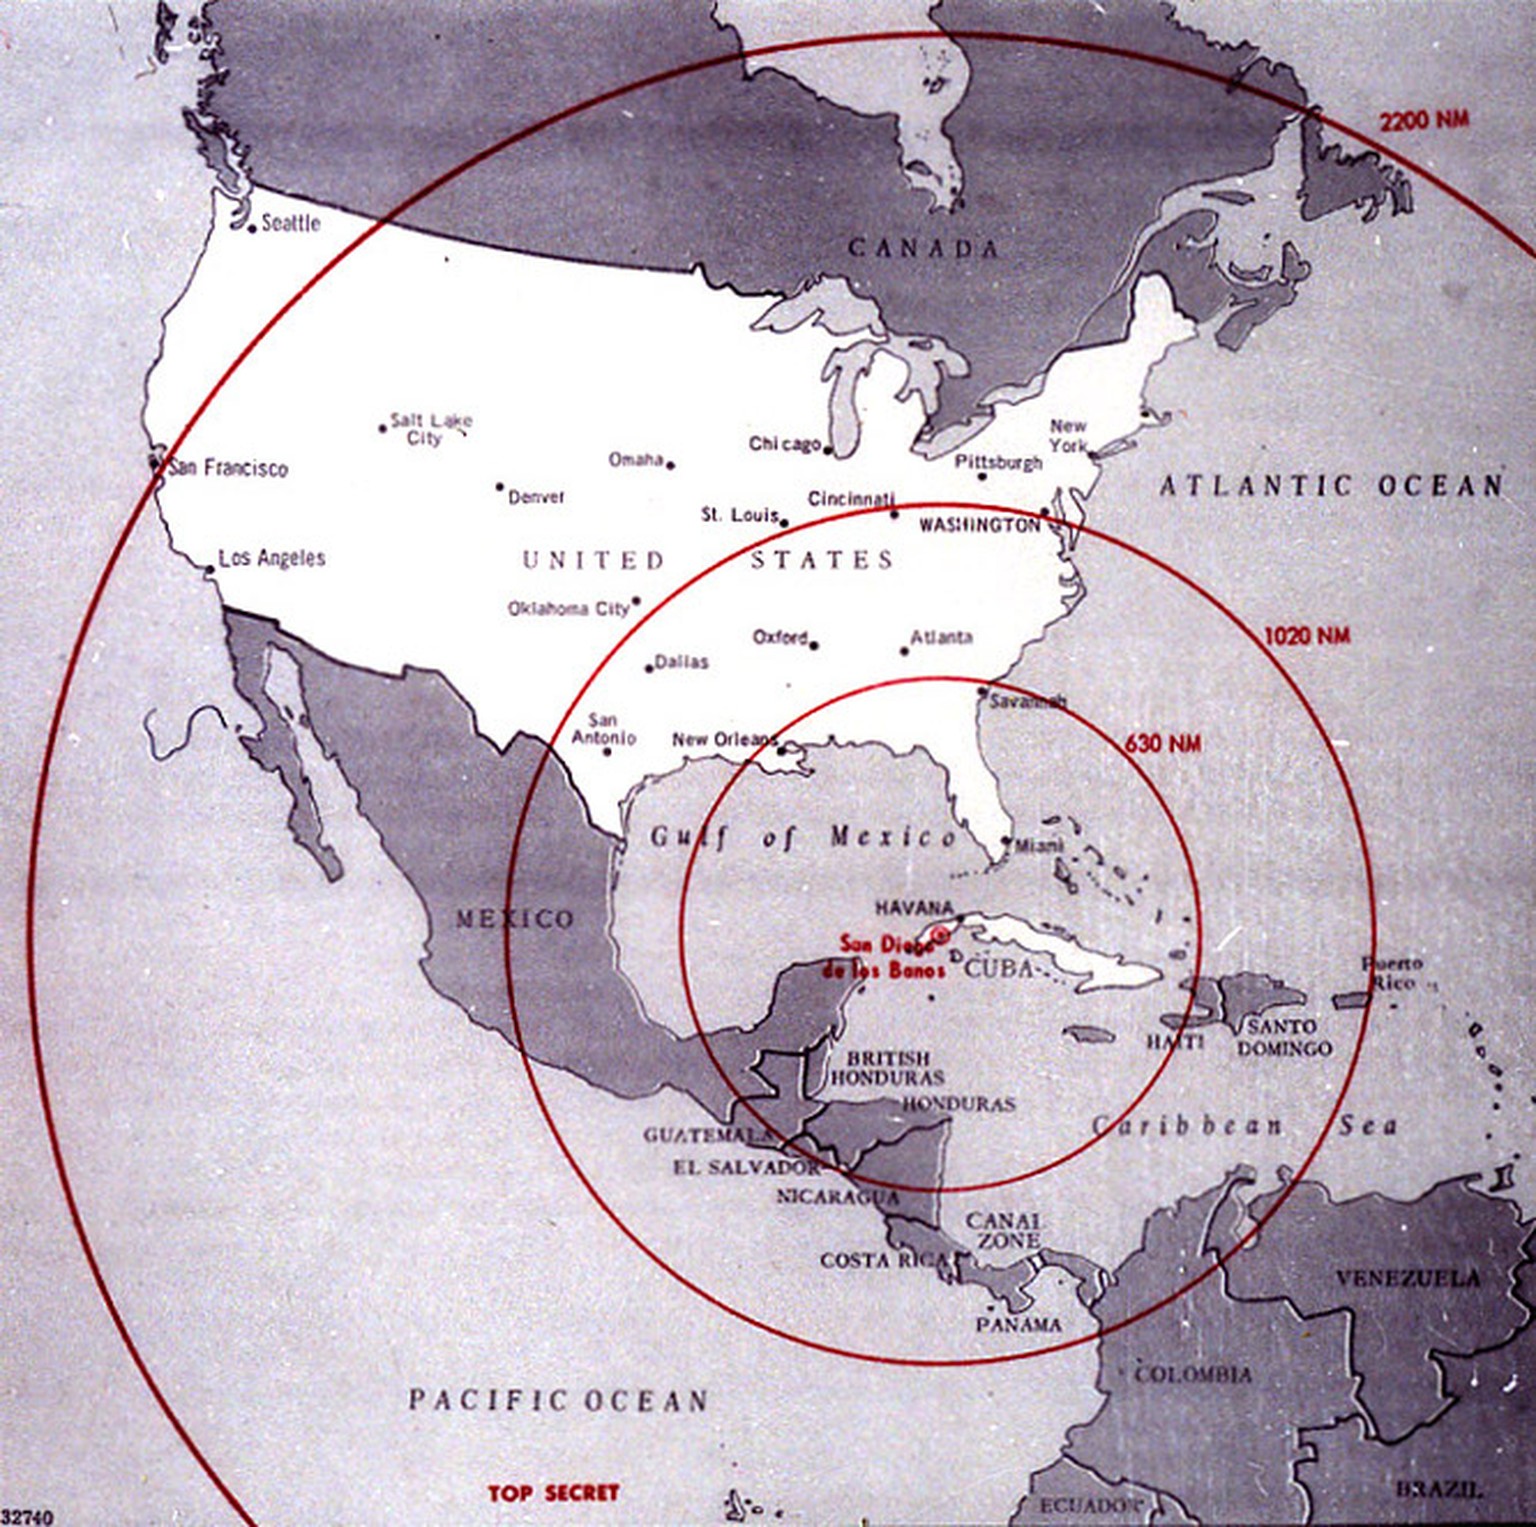 Diese Karte der westlichen Hemisphäre zeigt die volle Reichweite der Atomraketen, die auf Kuba im Rahmen der Kubakrise stationiert werden sollten bzw. worden sind.